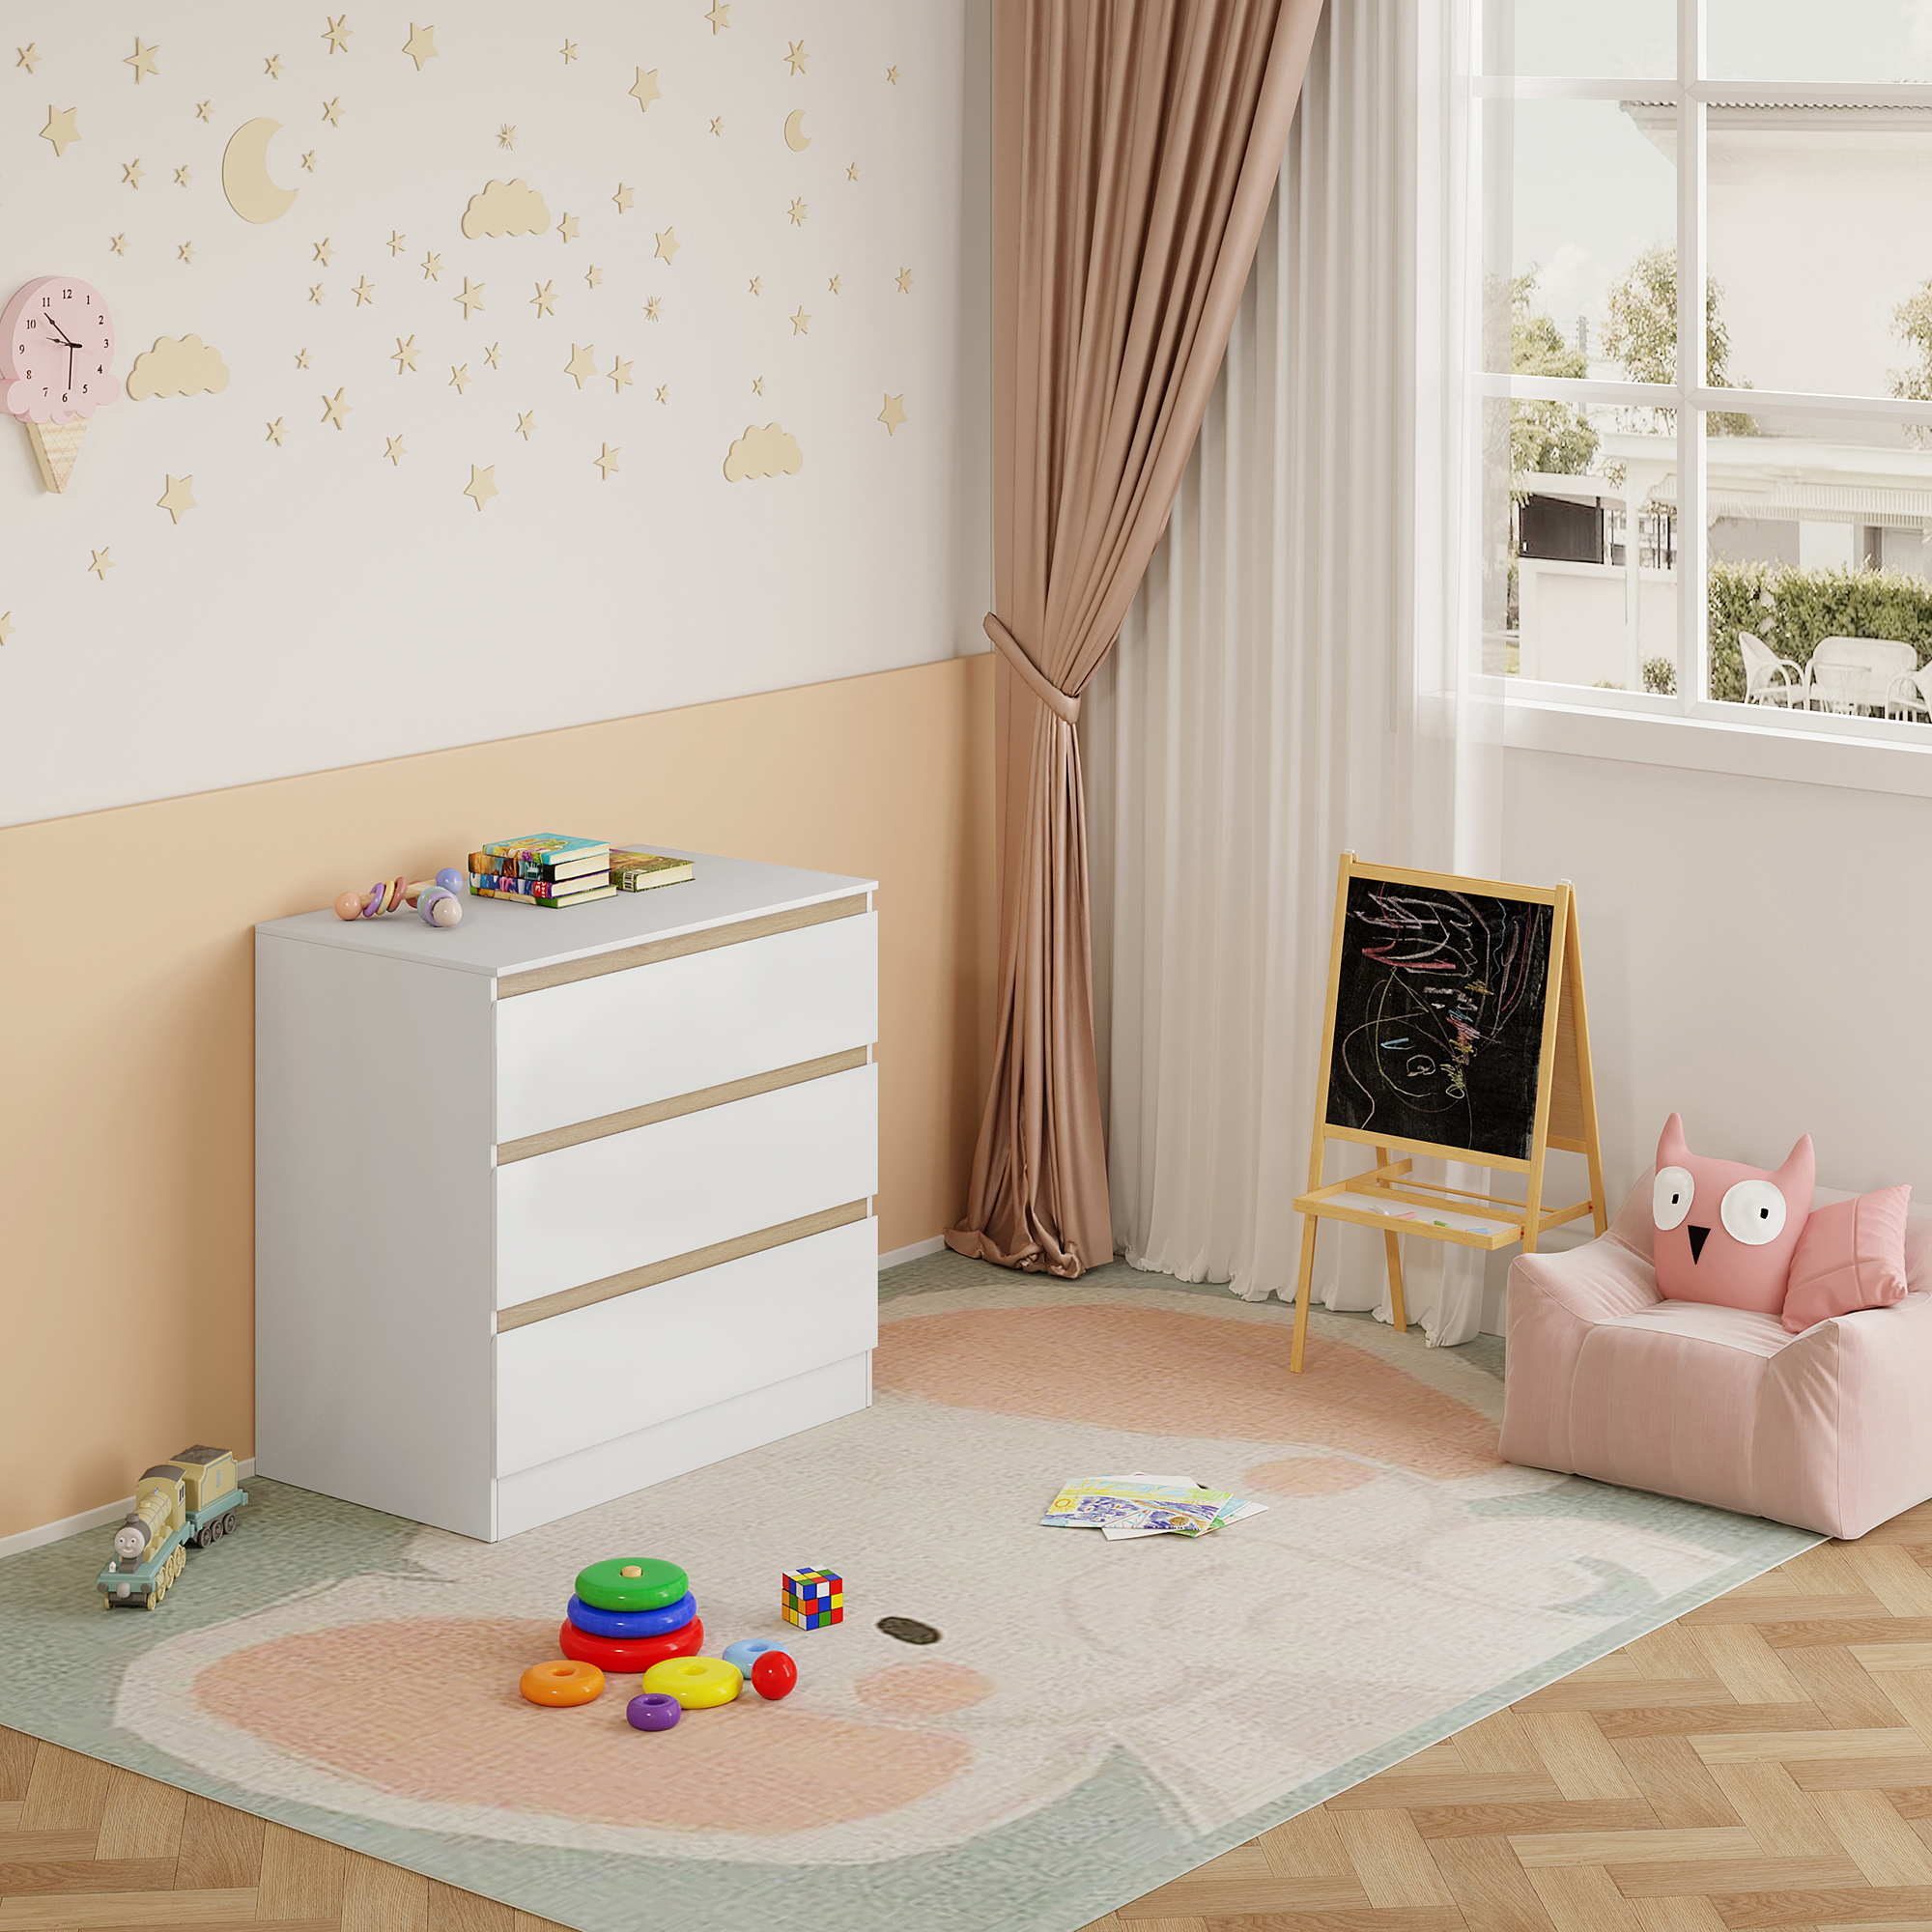 Comoda Moderno de 3 Cajones, Cajonera Armario Interior para Dormitorio o  Habitación Infantil, Acabado Madera Artificial, Color Blanco